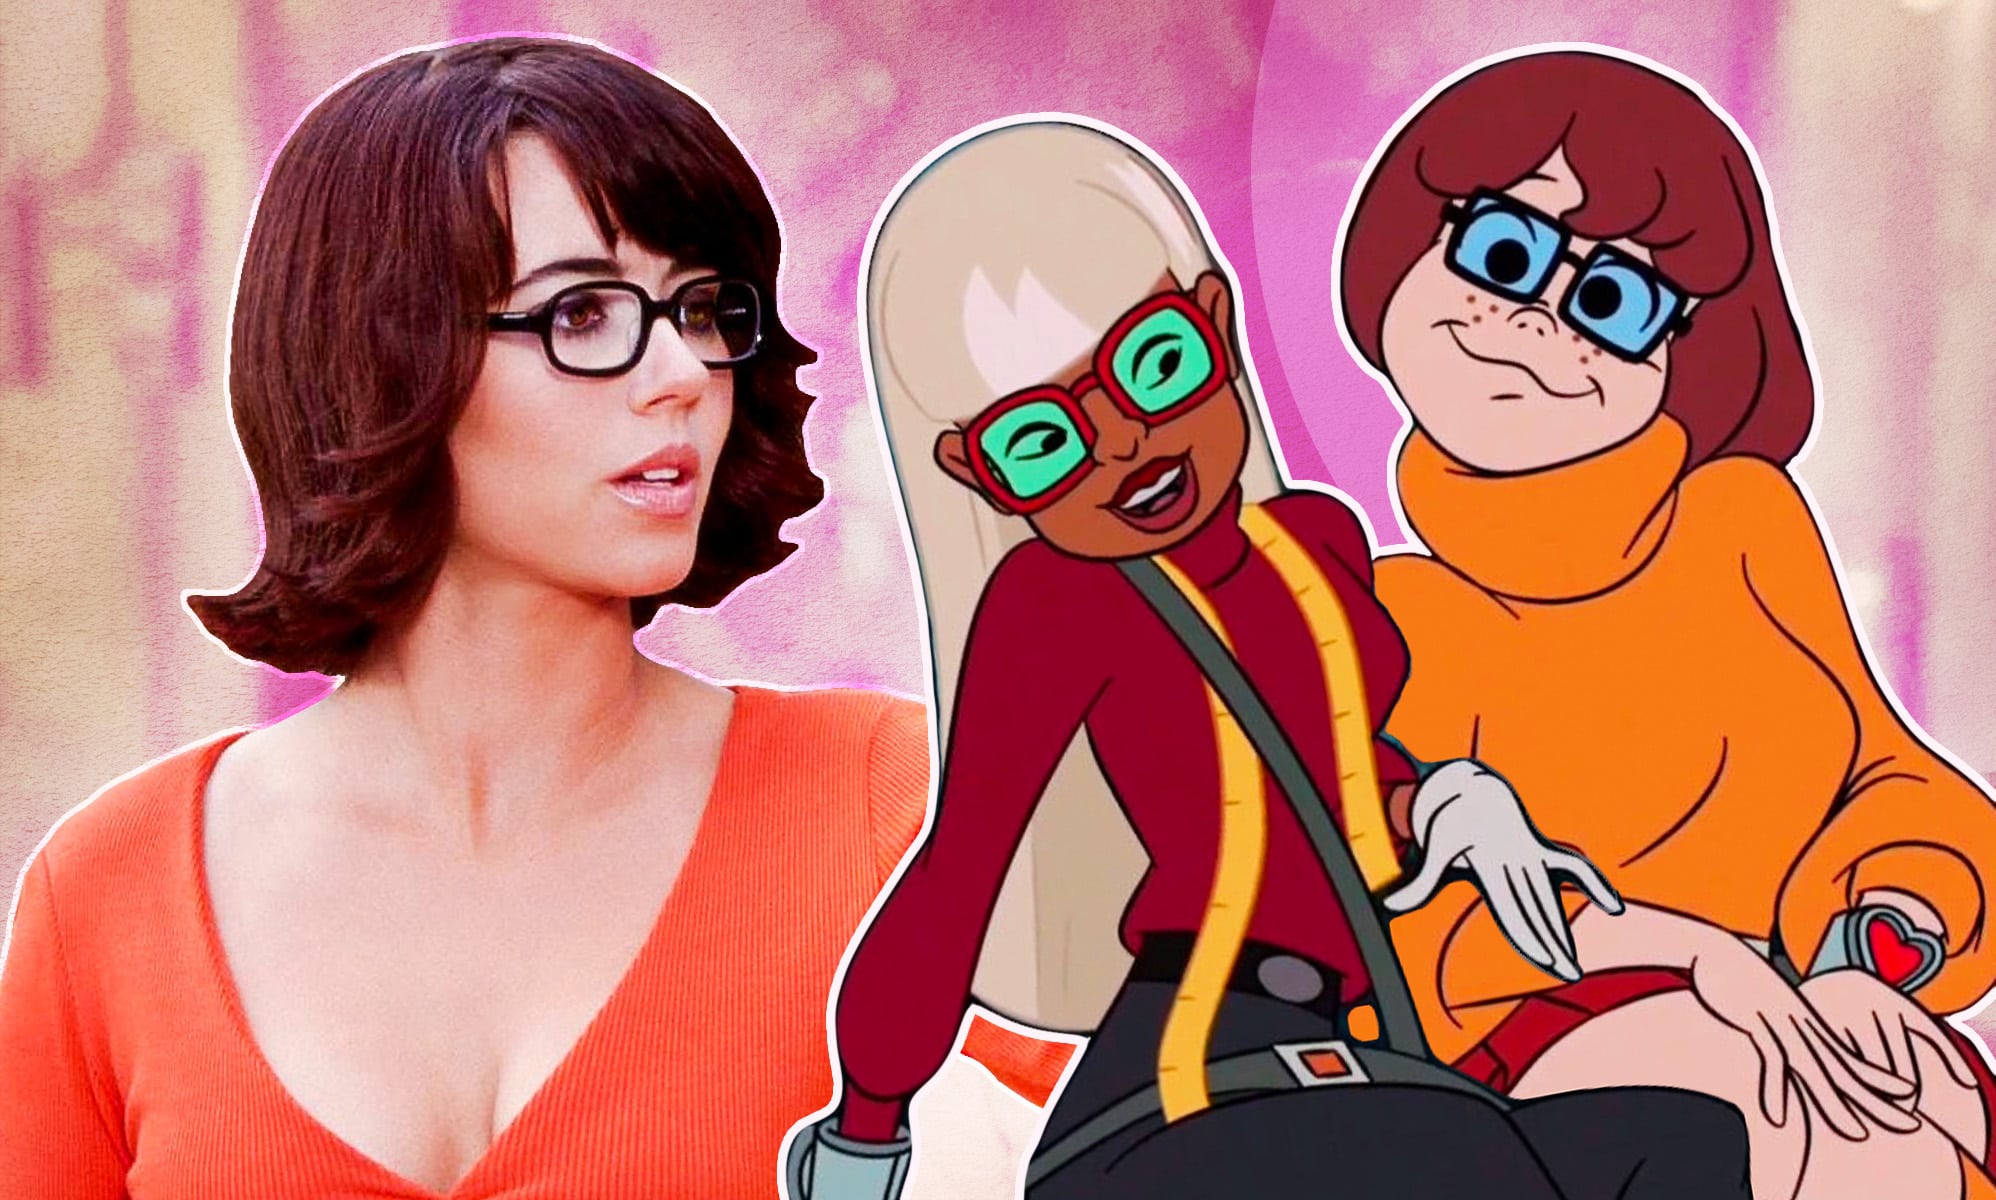 La actriz que interpretó a Velma en Scooby Doo también dice que es lesbiana